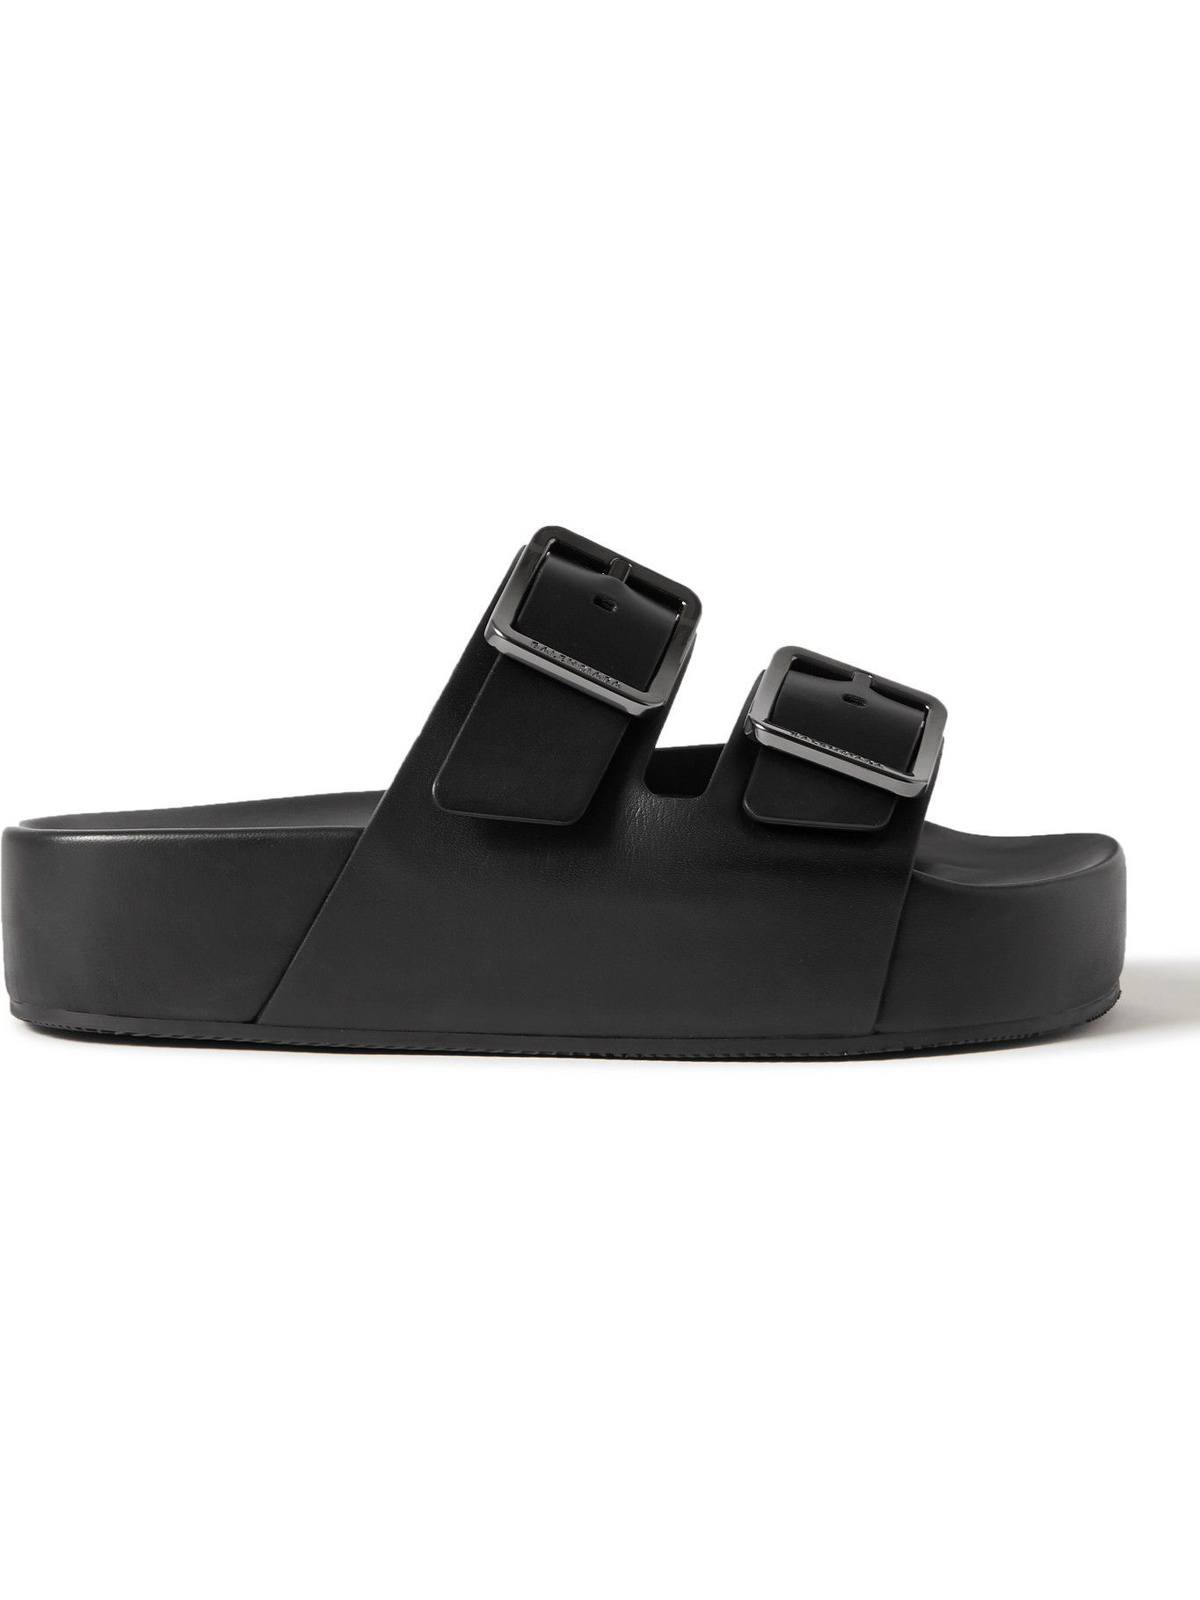 BALENCIAGA - Mallorca Leather Platform Sandals - Black Balenciaga